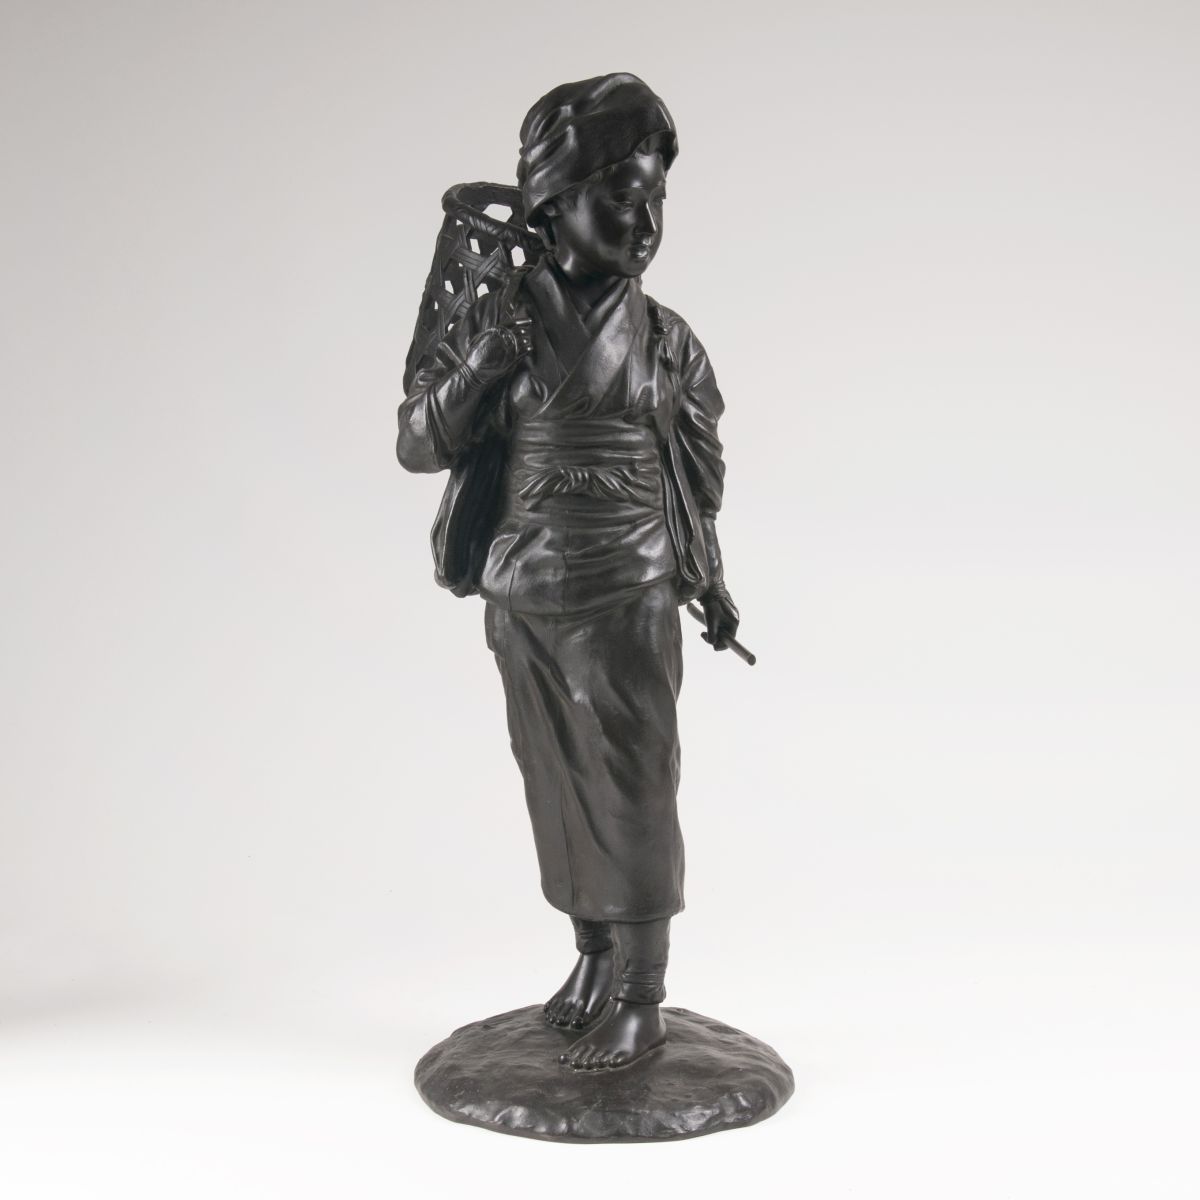 A Japanese bronze sculpture 'Boy with pannier'